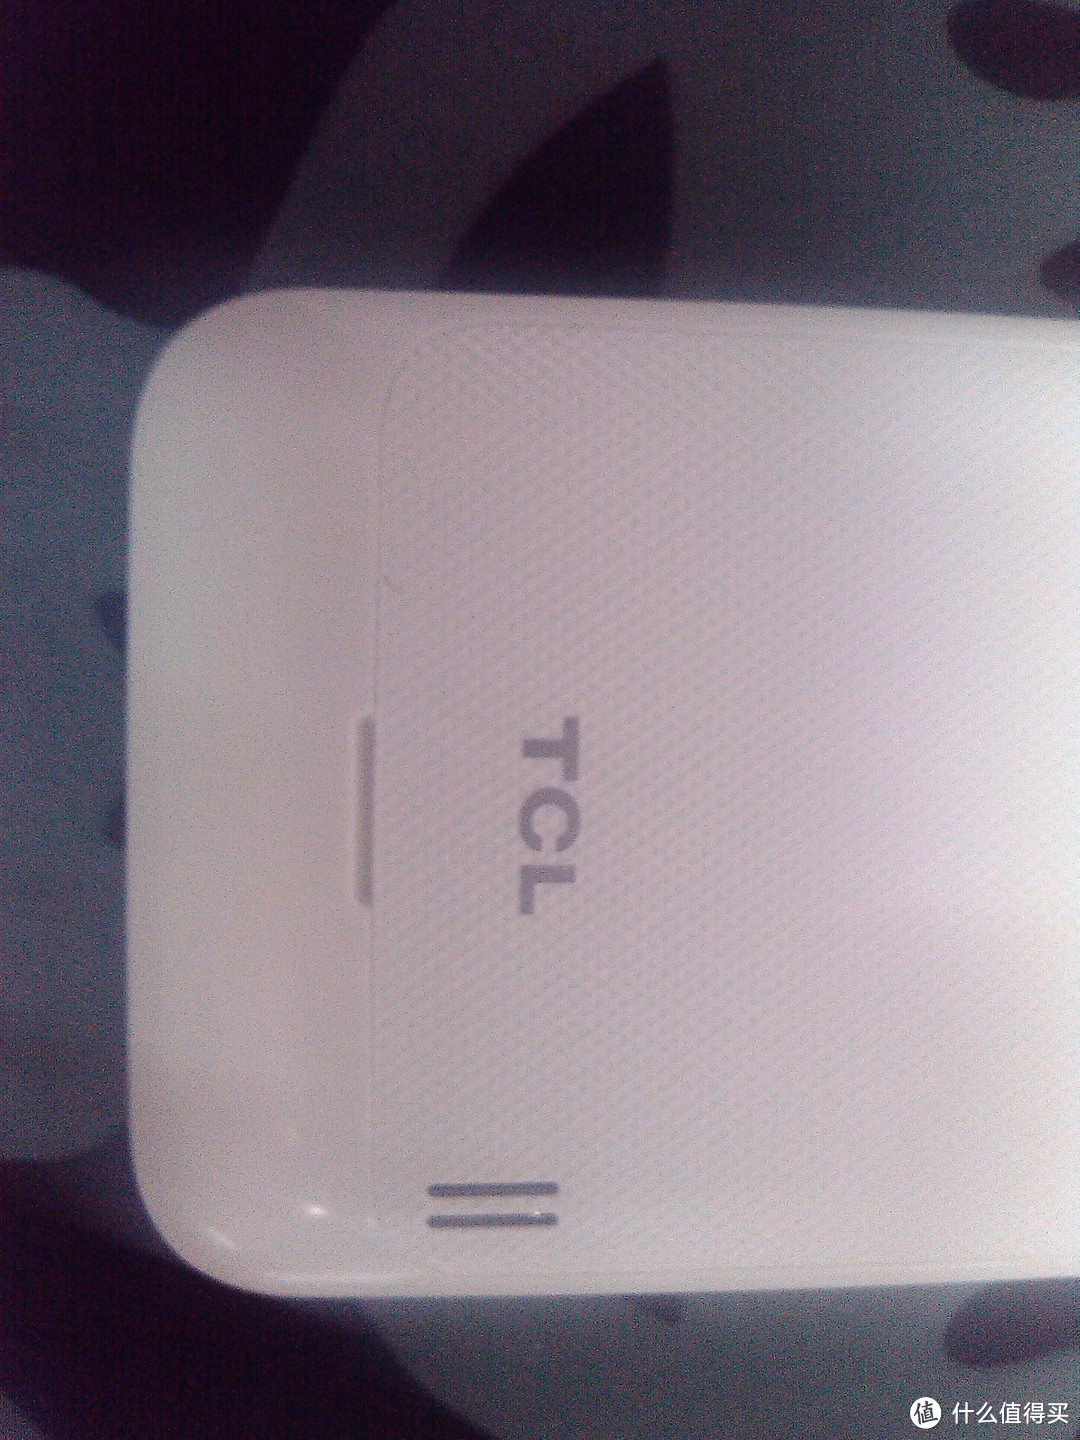 屌丝神器：TCL 臻智 S900 智能手机